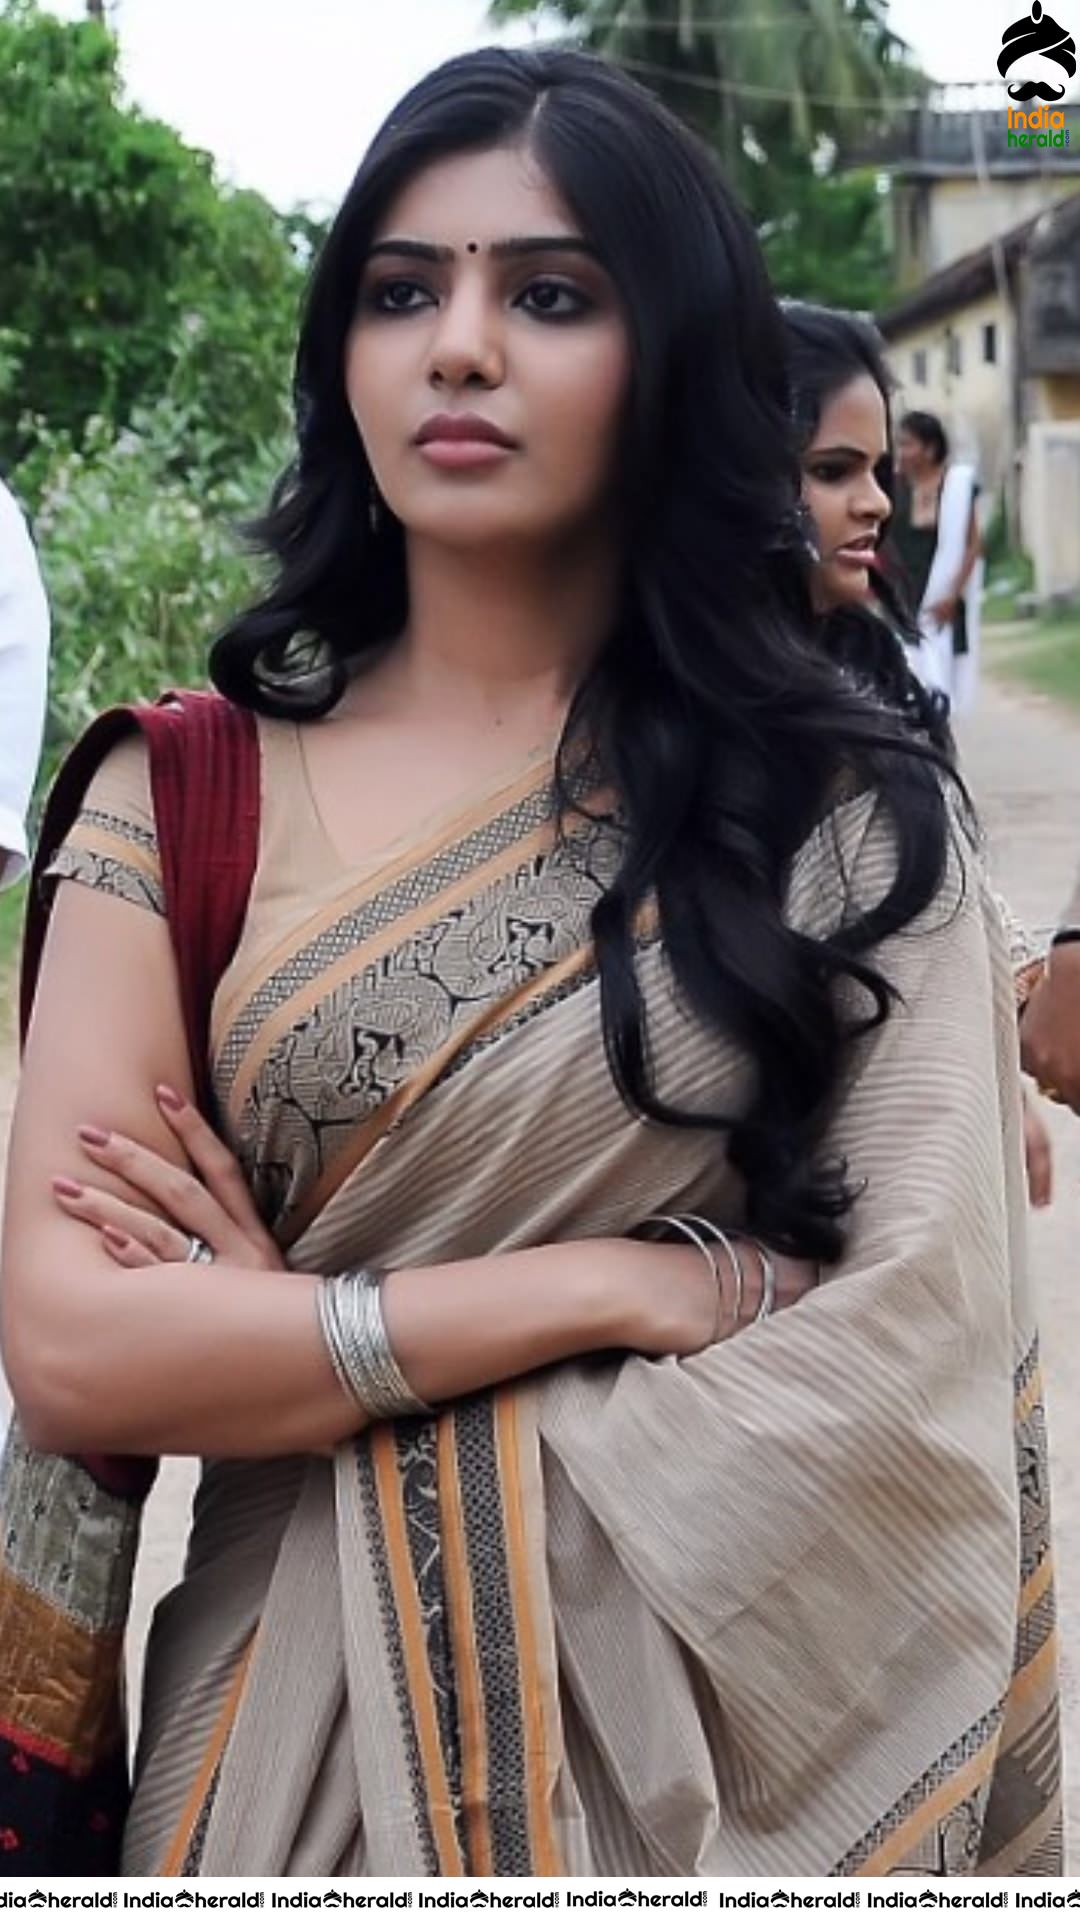 INDIA HERALD EXCLUSIVE Samantha Unseen Stills from Neethane En Ponvasantham Tamil Movie Set 1